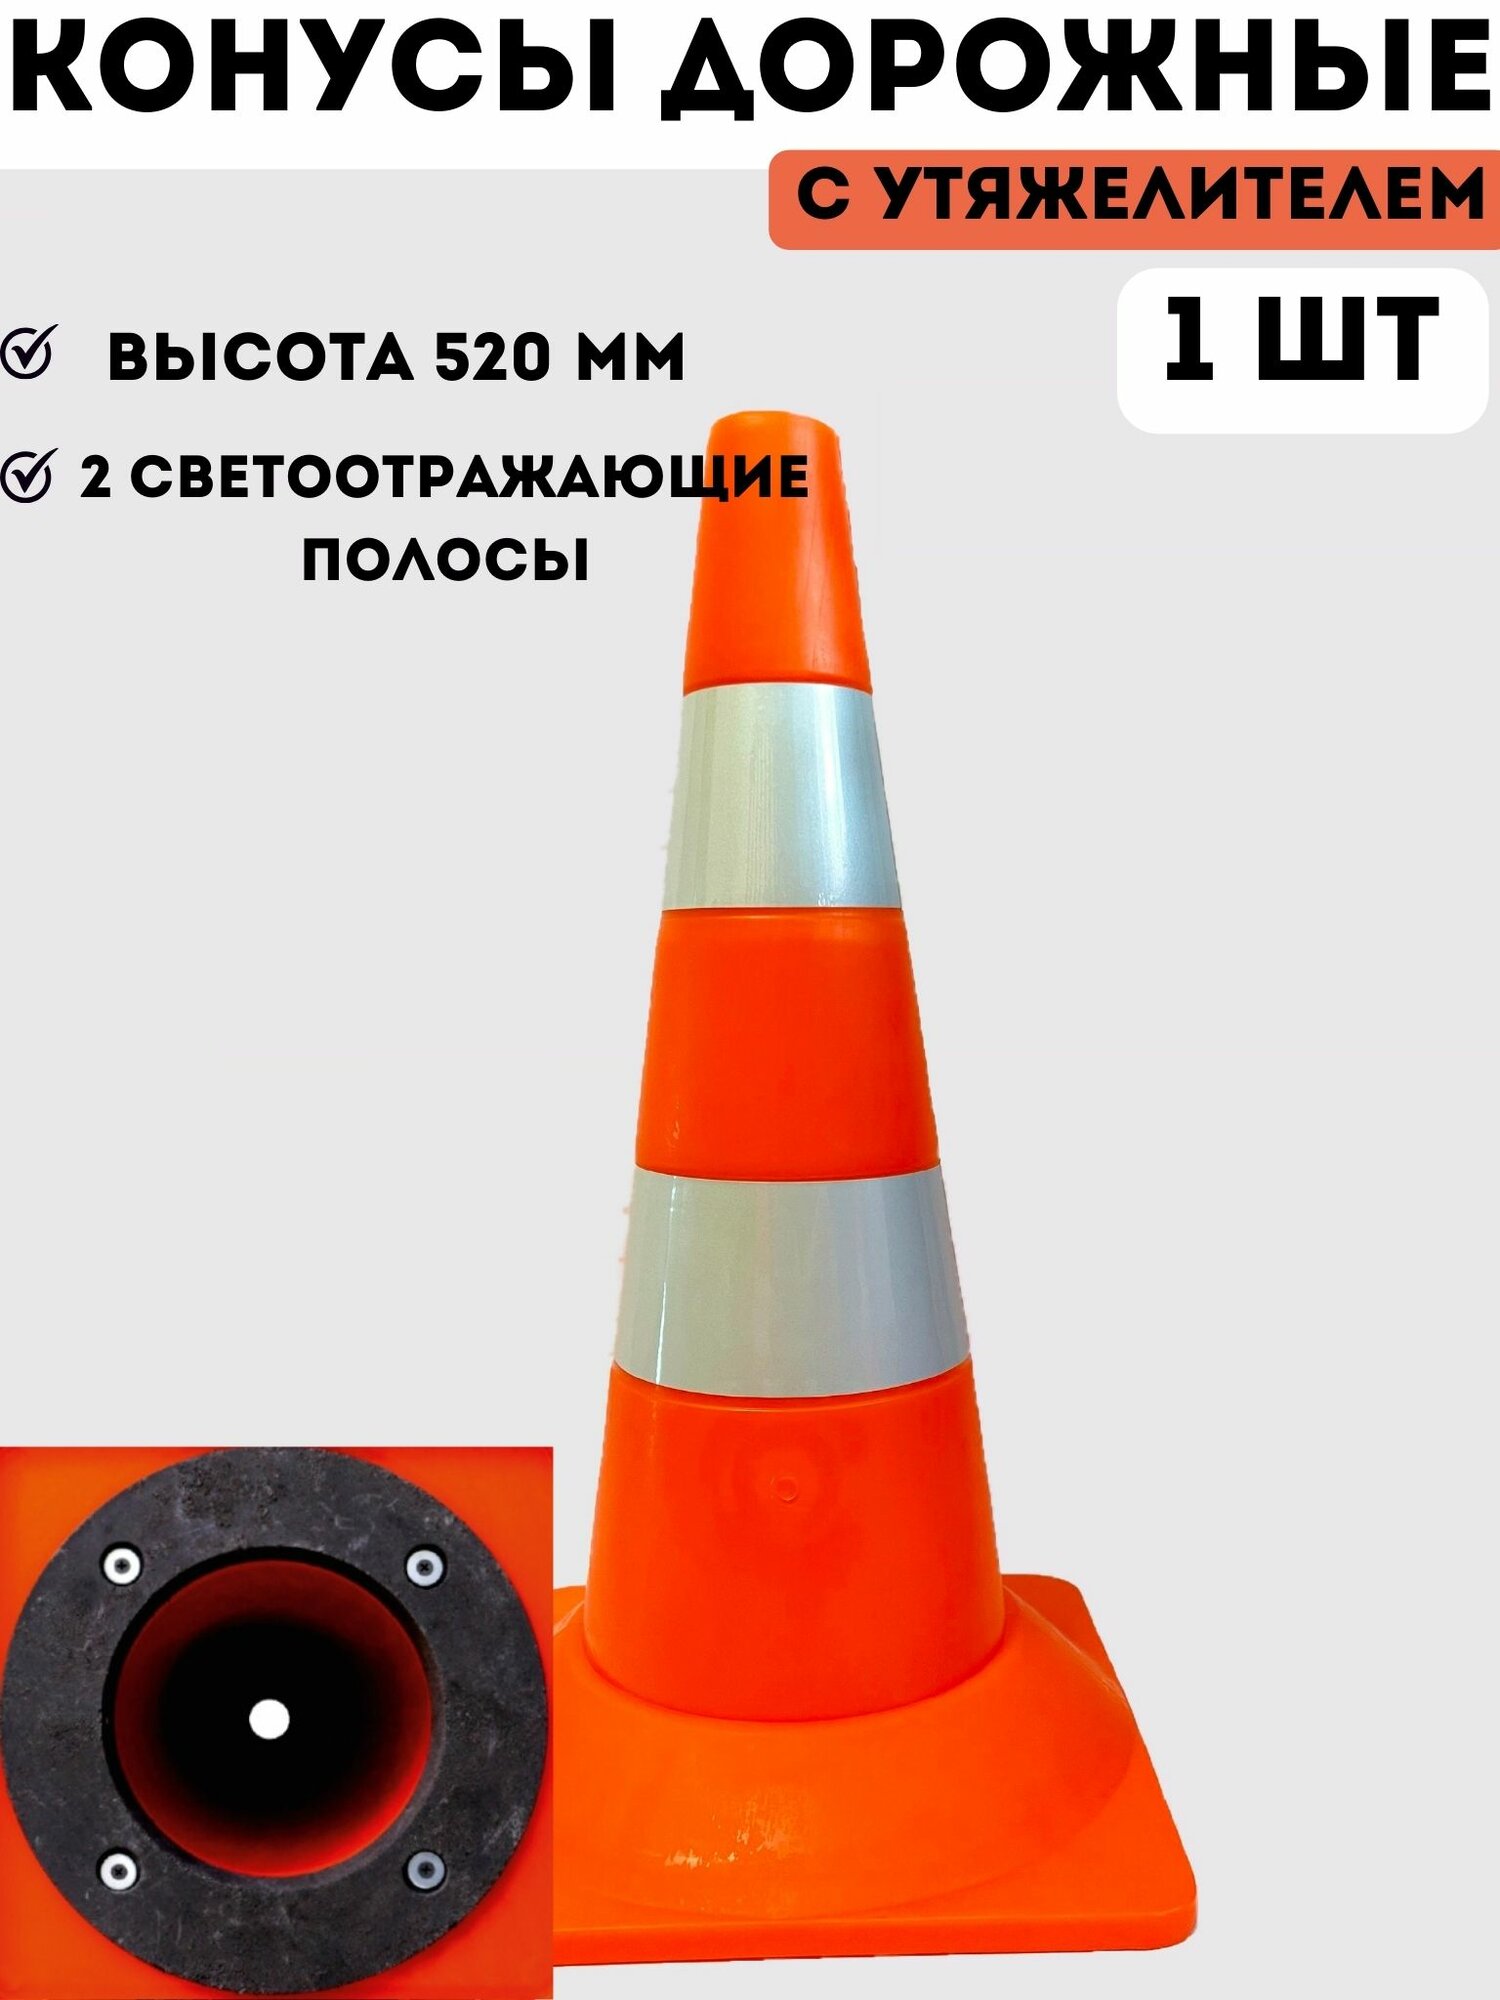 Конус дорожный сигнальный пластиковый мягкий оранжевый утяжеленный с 2 светоотражающими полосами (набор 1 шт - высота 520 мм)